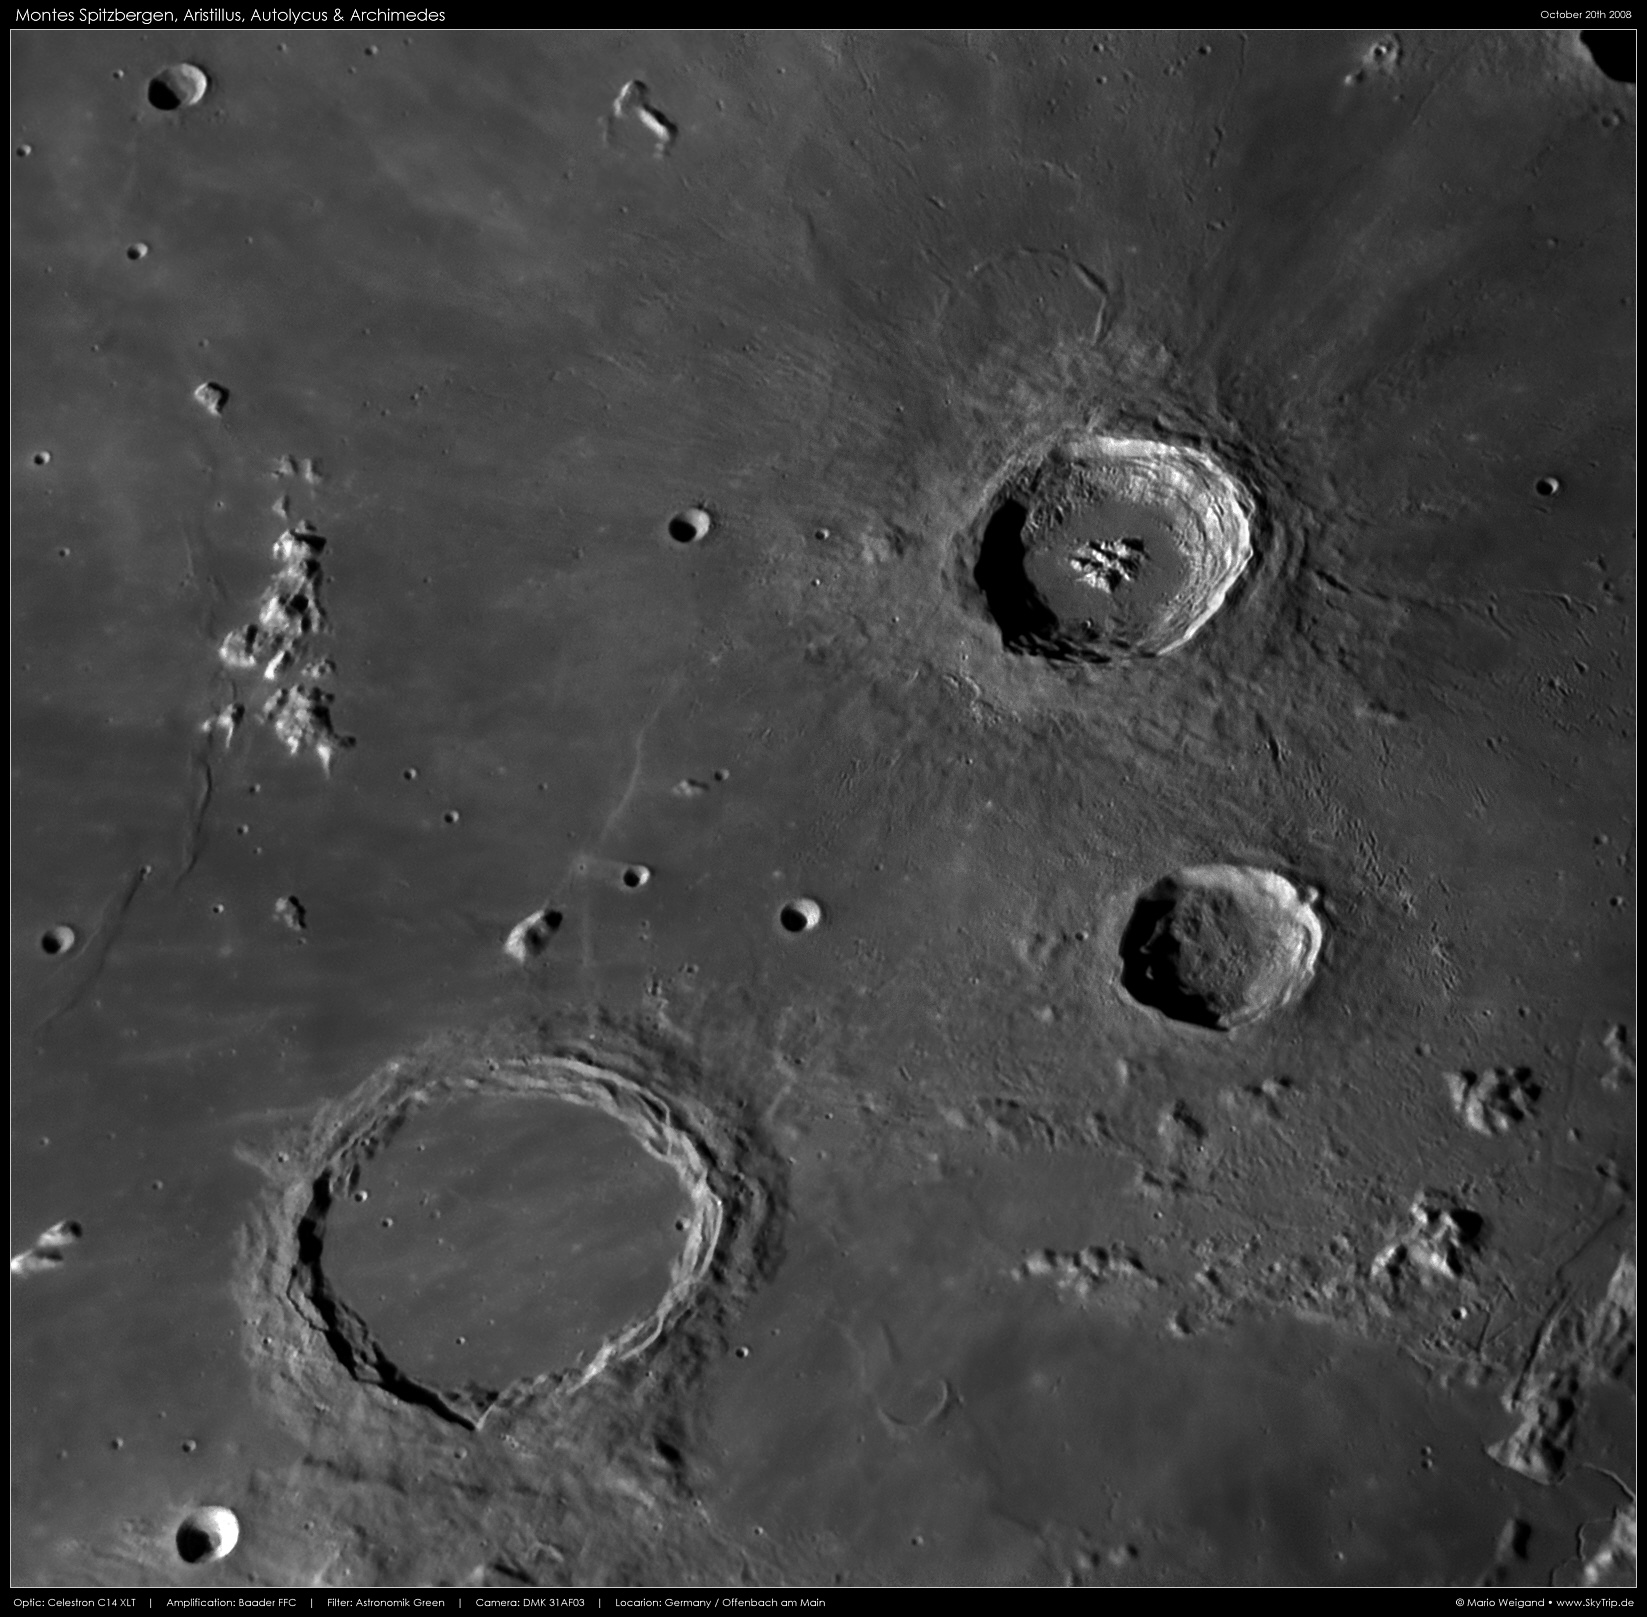 Mond: Montes Spitzbergen, Archimedes, Aristillus